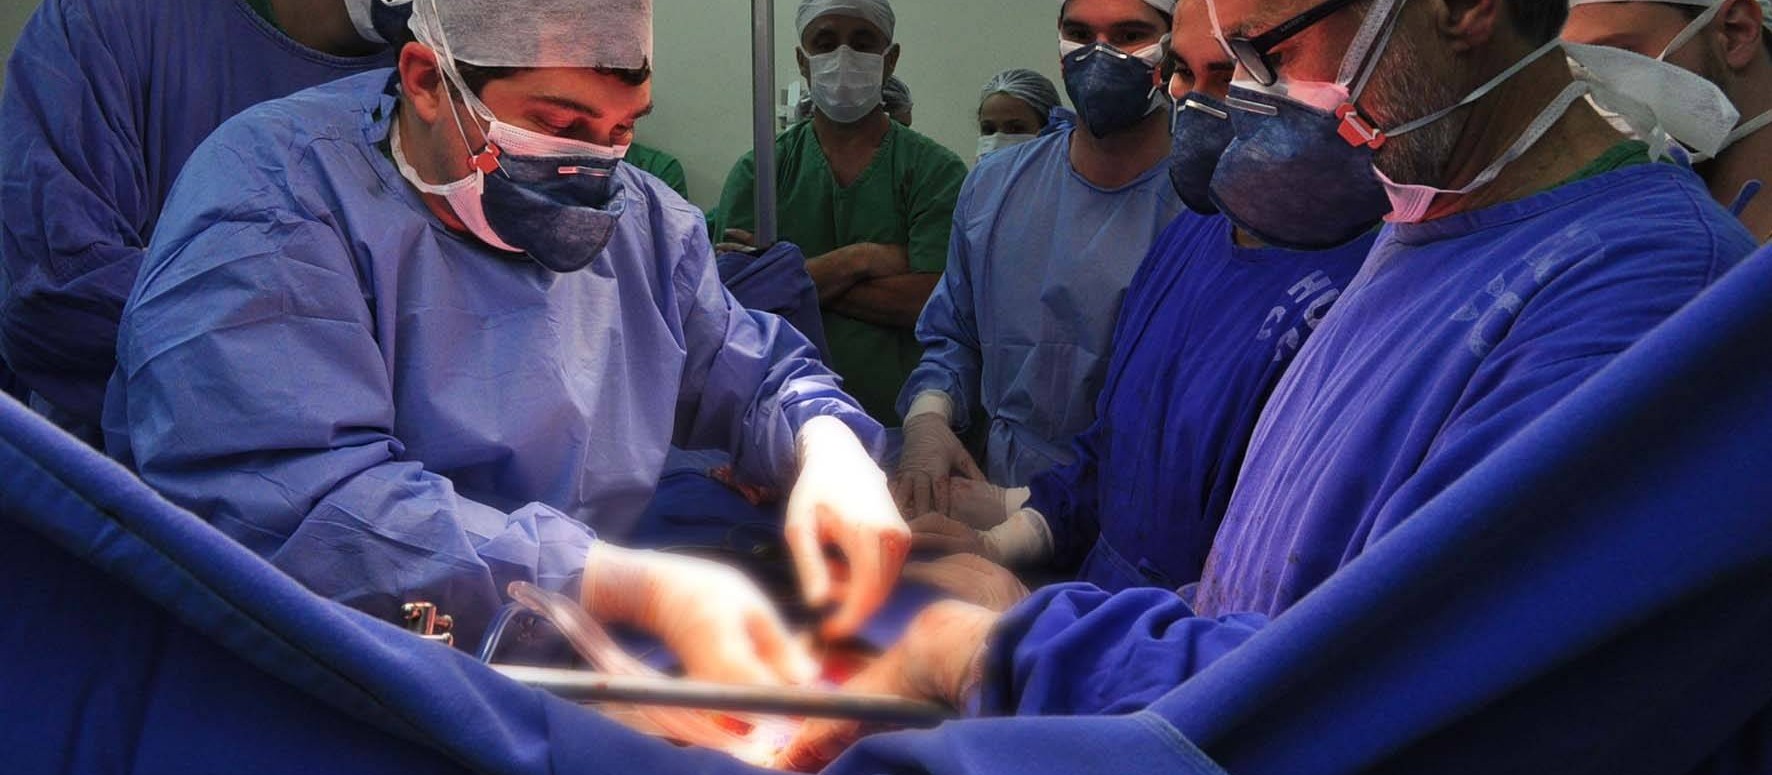 Cirurgias ortopédicas de urgência são retomadas no RN